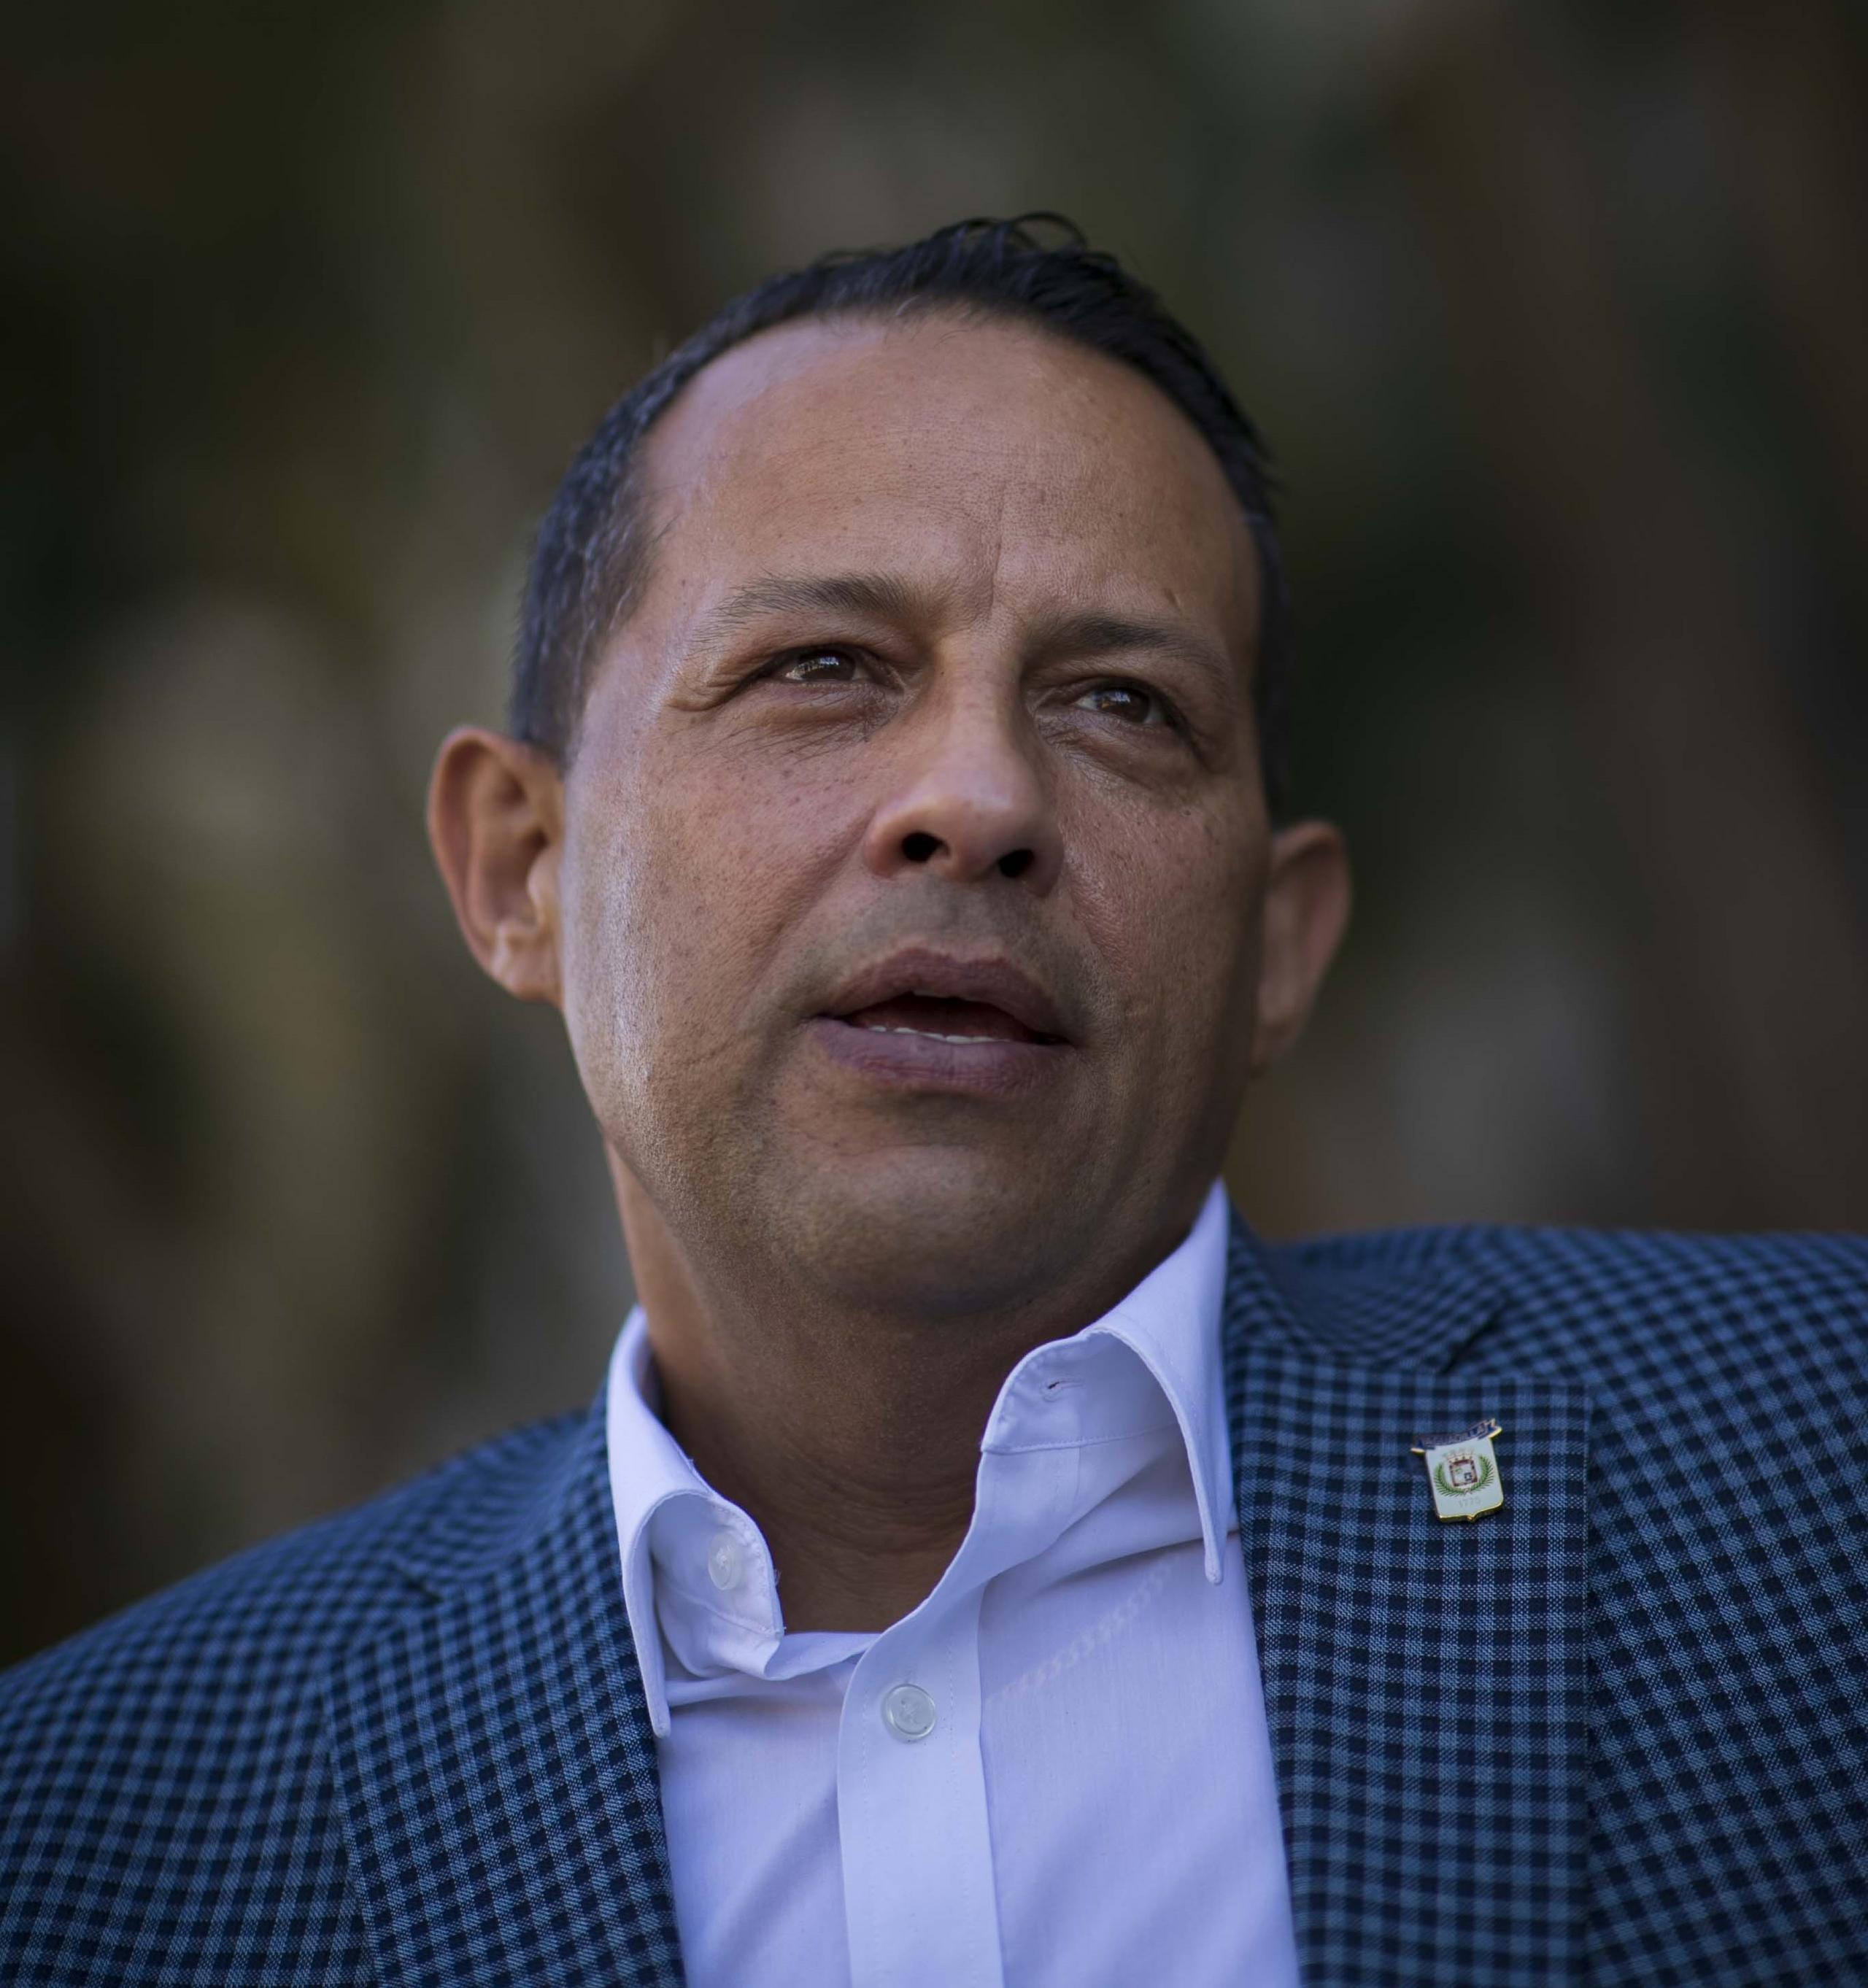 Julio Roldán informó que se comunicará con Manuel Cidre, designado secretario de Desarrollo Económico, para solicitar más información sobre la salida y si tienen algún plan.